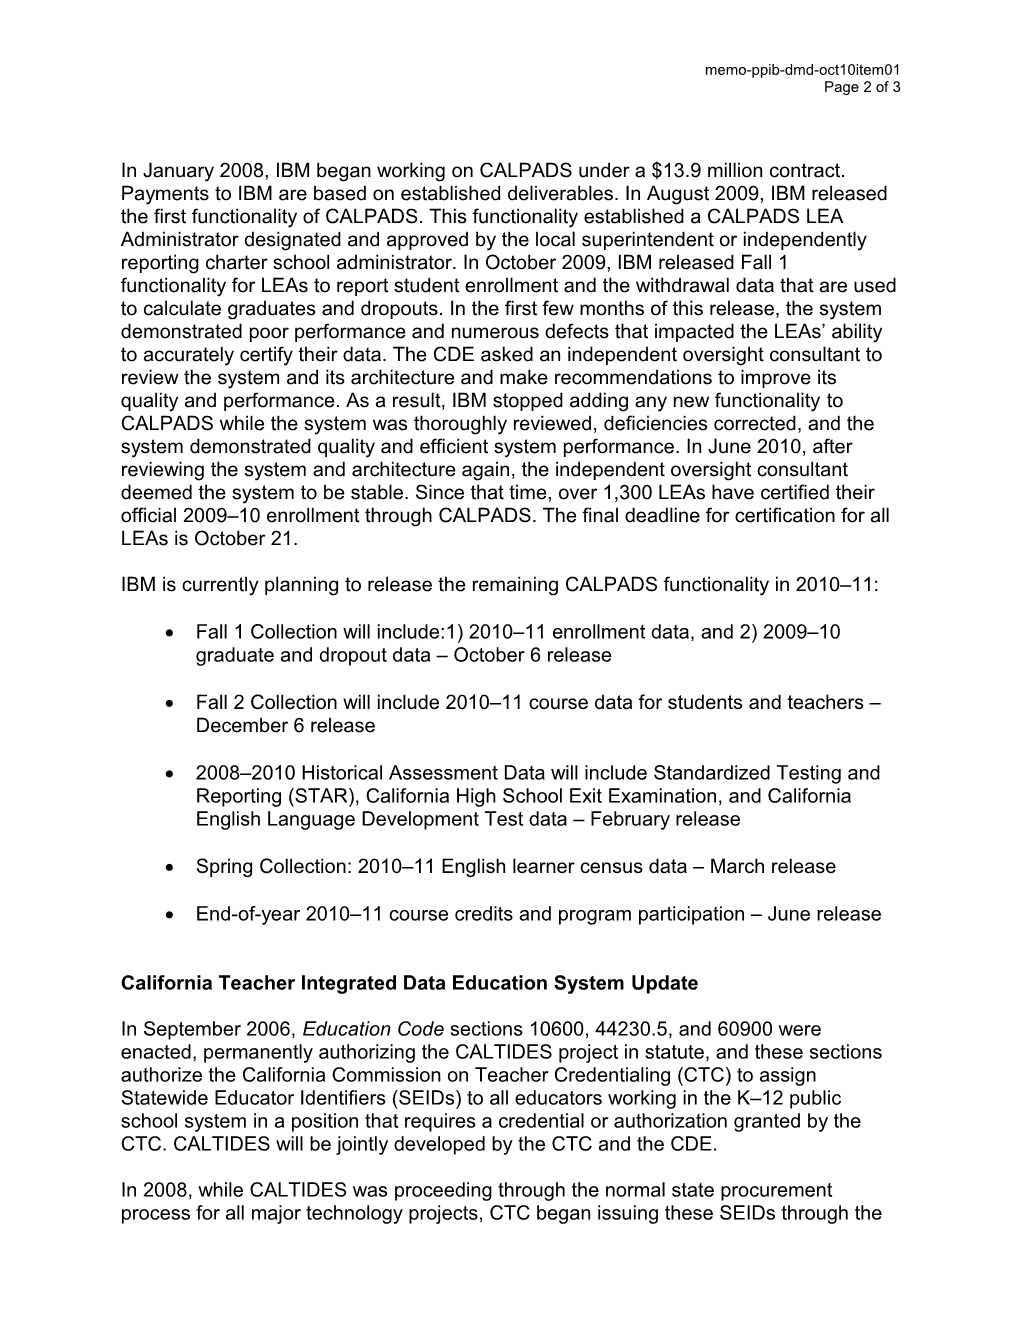 October 2010 Memorandum Item 4 - Information Memorandum (CA State Board of Education)